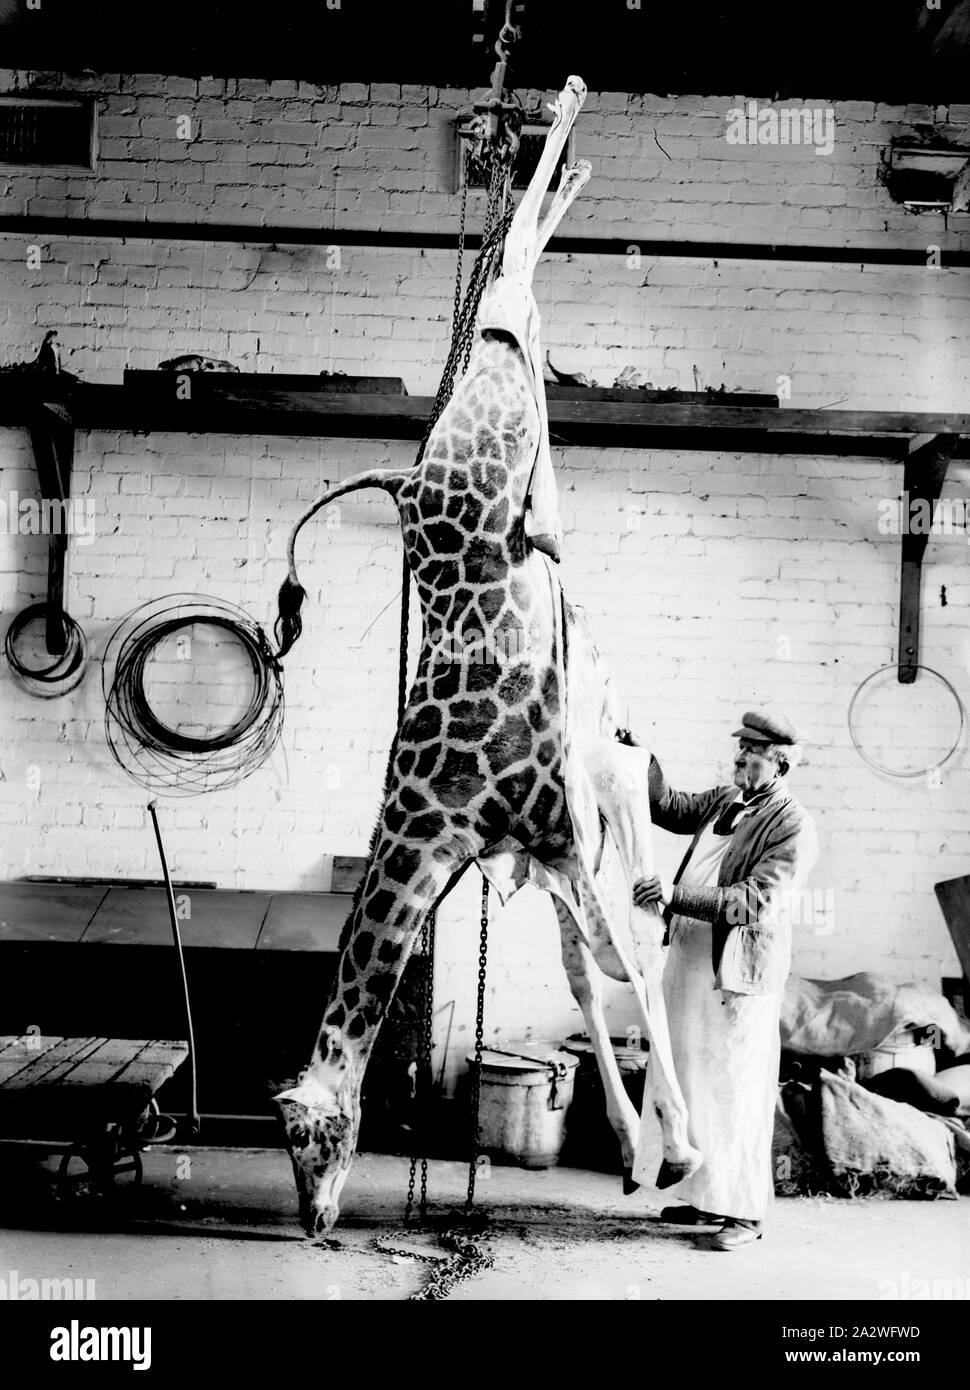 Vetro negativo - preparatore scuoiatura una giraffa, da A.J. Campbell, Melbourne, Victoria, Giu 1914, nelle prime fasi di una giraffa scuoiamento nel dipartimento preparators Foto Stock